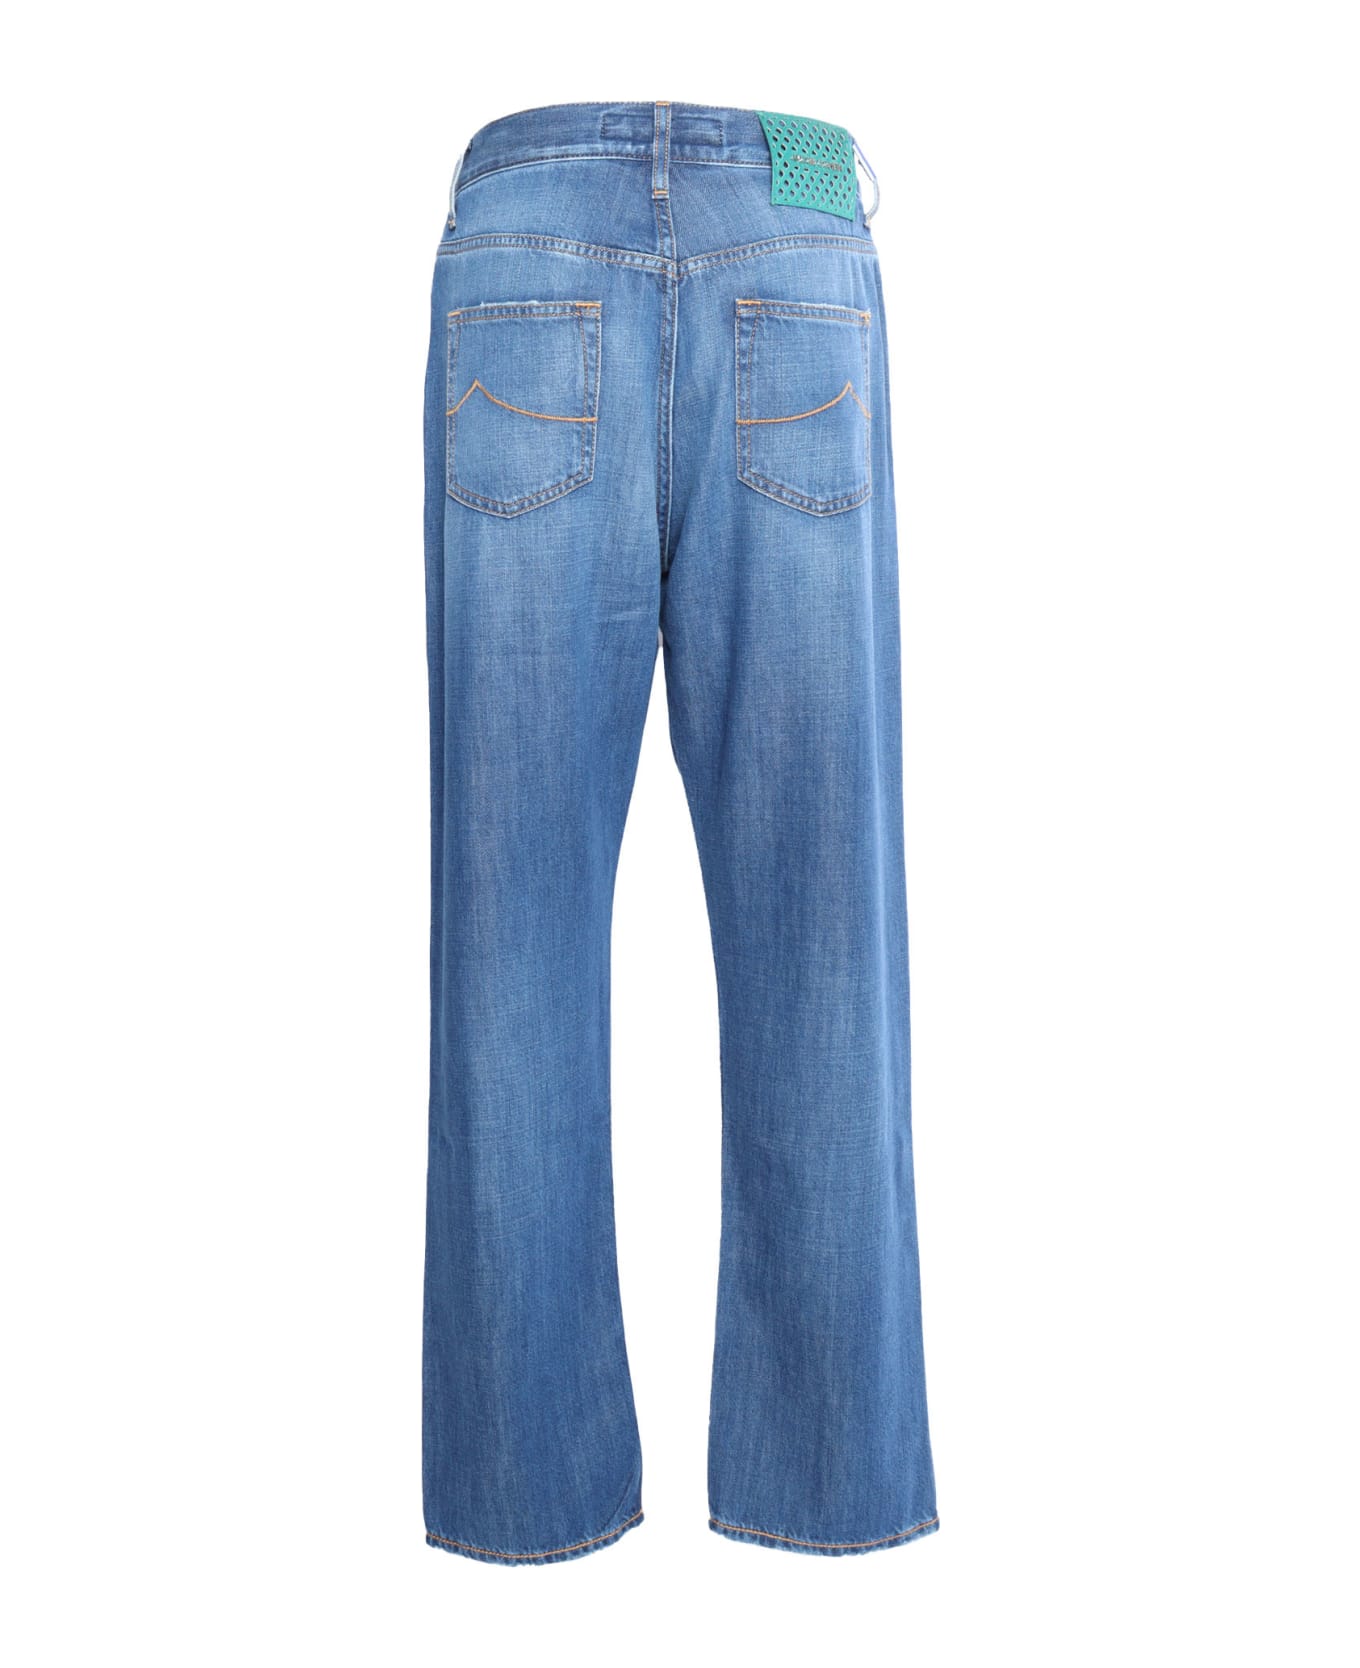 Jacob Cohen Blue 5 Pocket Jeans - BLUE